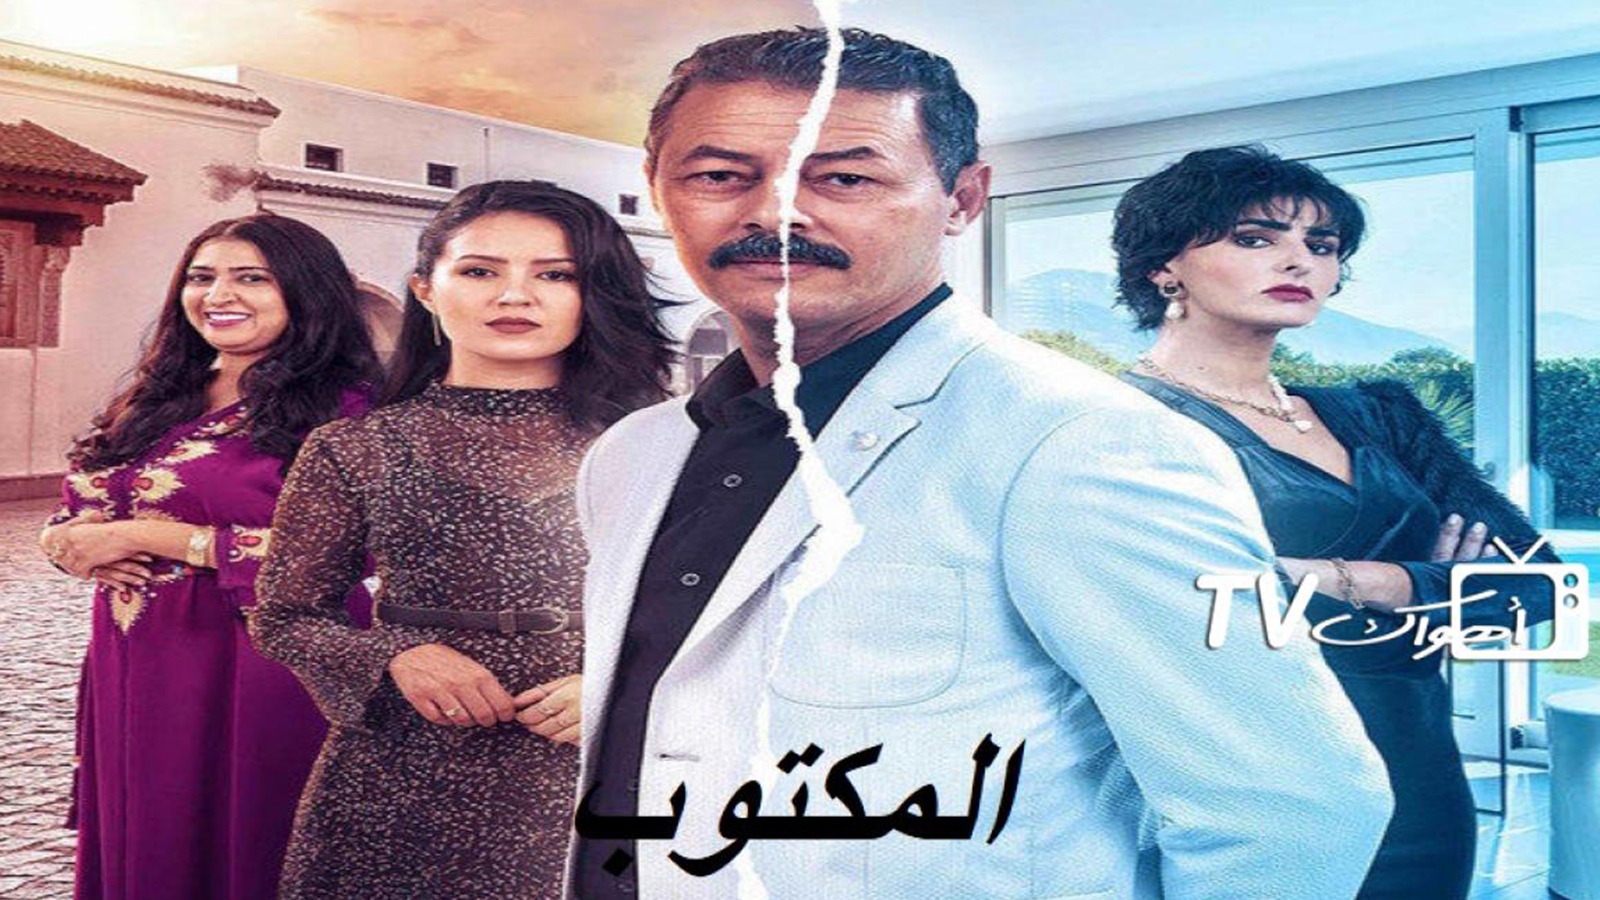 “المكتوب”.. مسلسل مغربي يكشف نظرة المجتمع لمهنة “الشيخة”